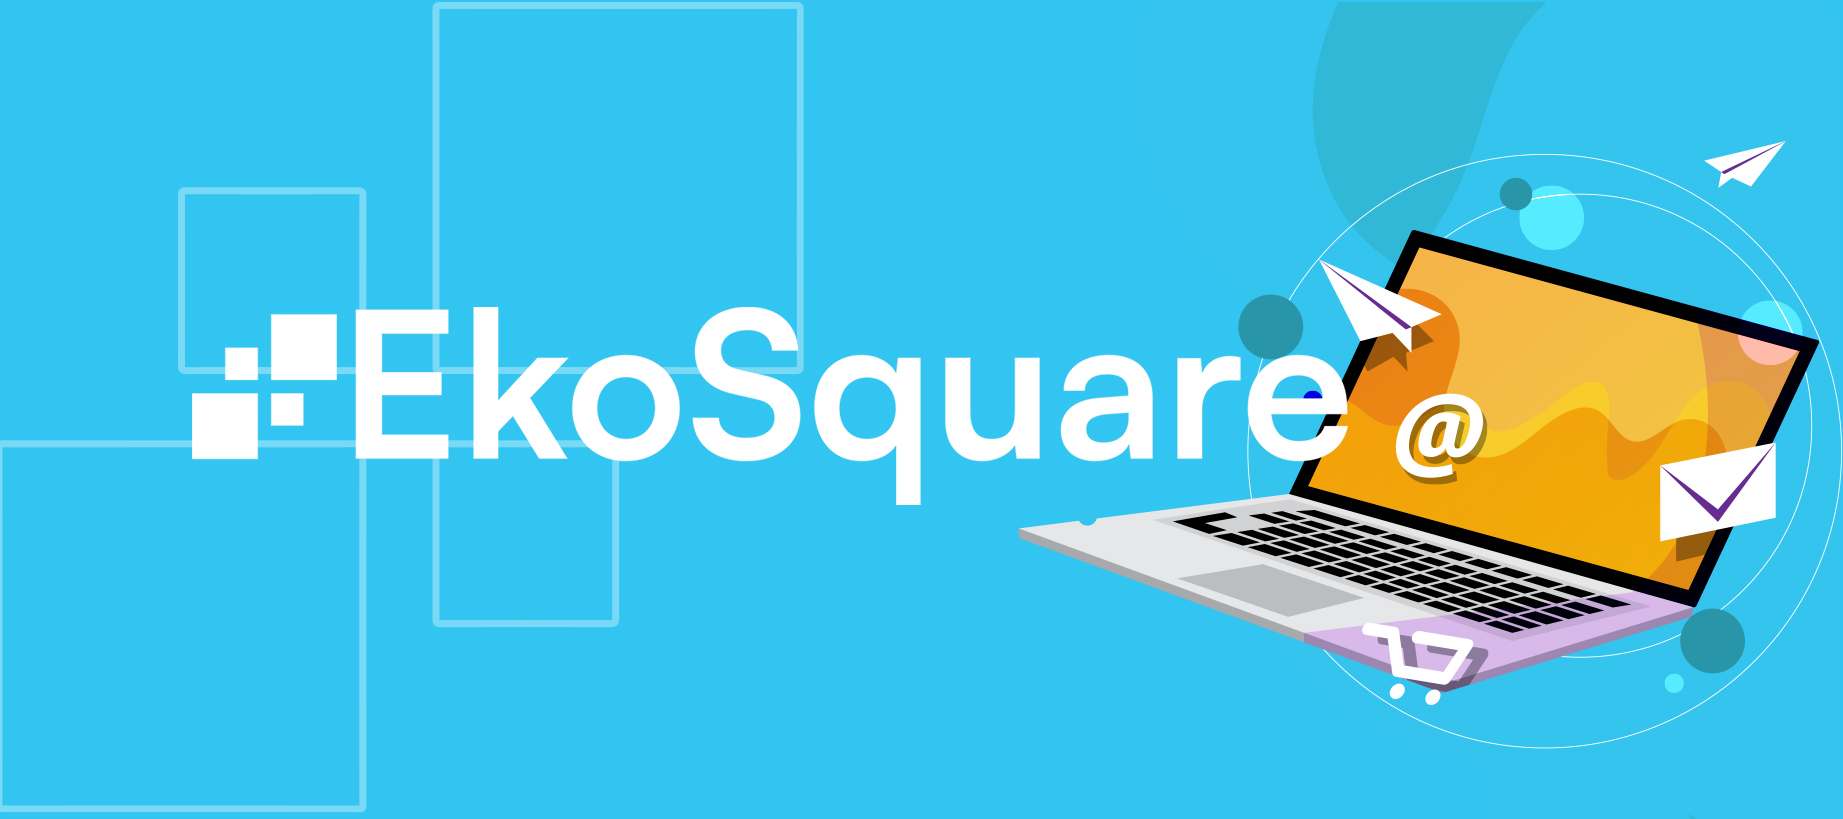 Messaging & PR - Eko Square - Web developer Columbus Ohio